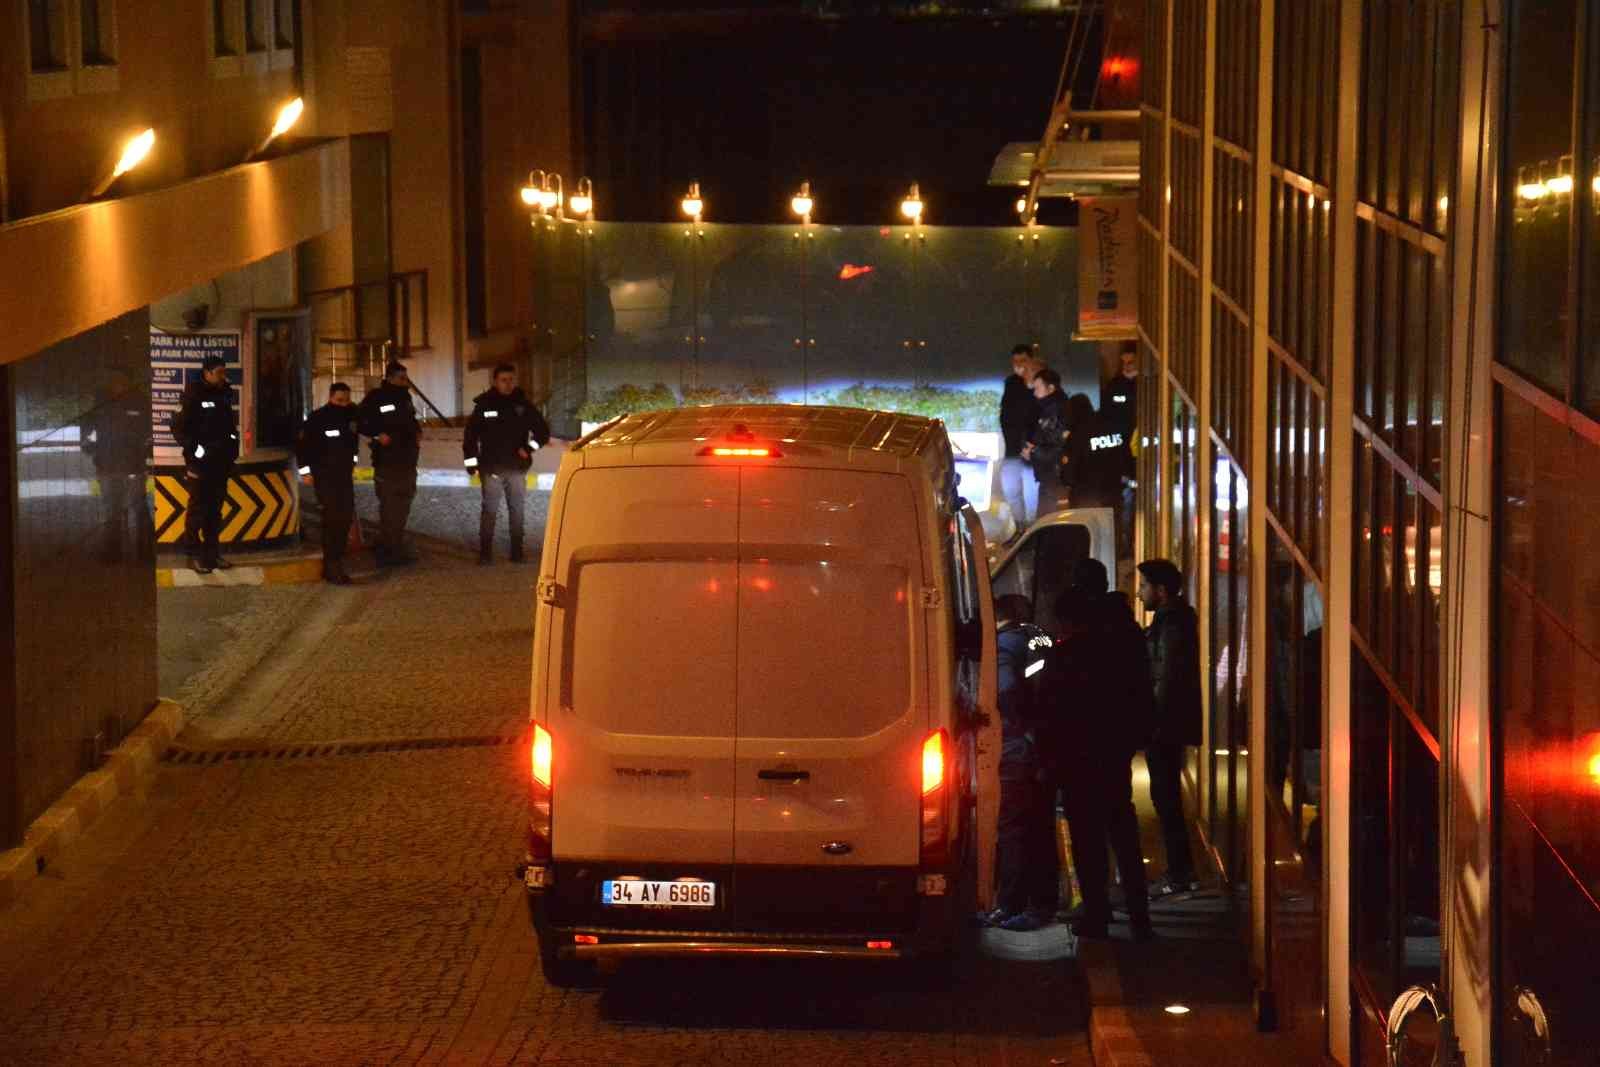 Beşiktaş Ortaköy’de otelin 7’nci katından düşerek ağır yaralanan kadın hastaneye kaldırıldı. Kadının yanındaki erkek ise gözaltına alınarak polis ...